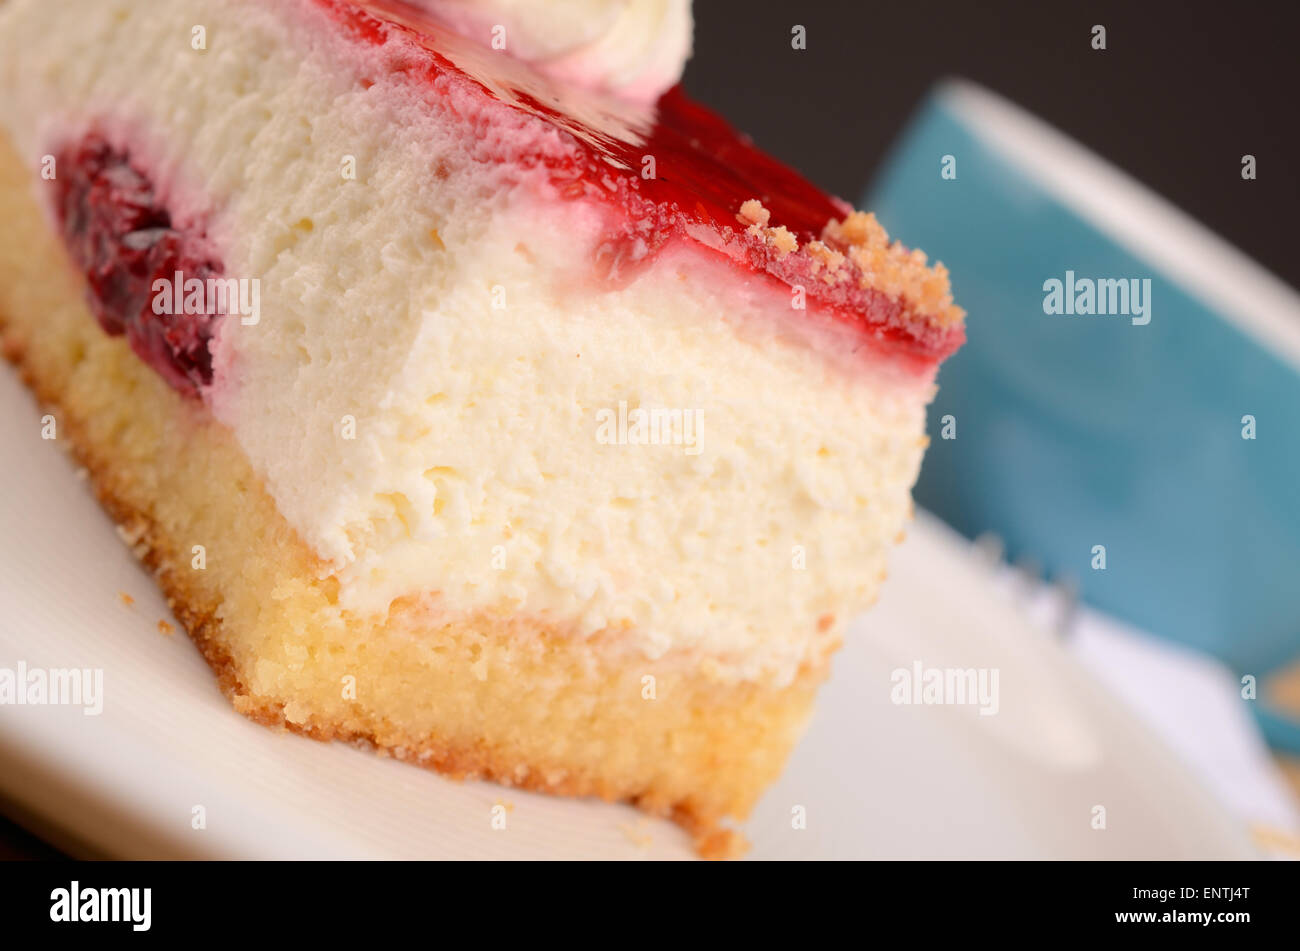 Cerca de una torta de frambuesa sobre una placa blanca. Foto de stock